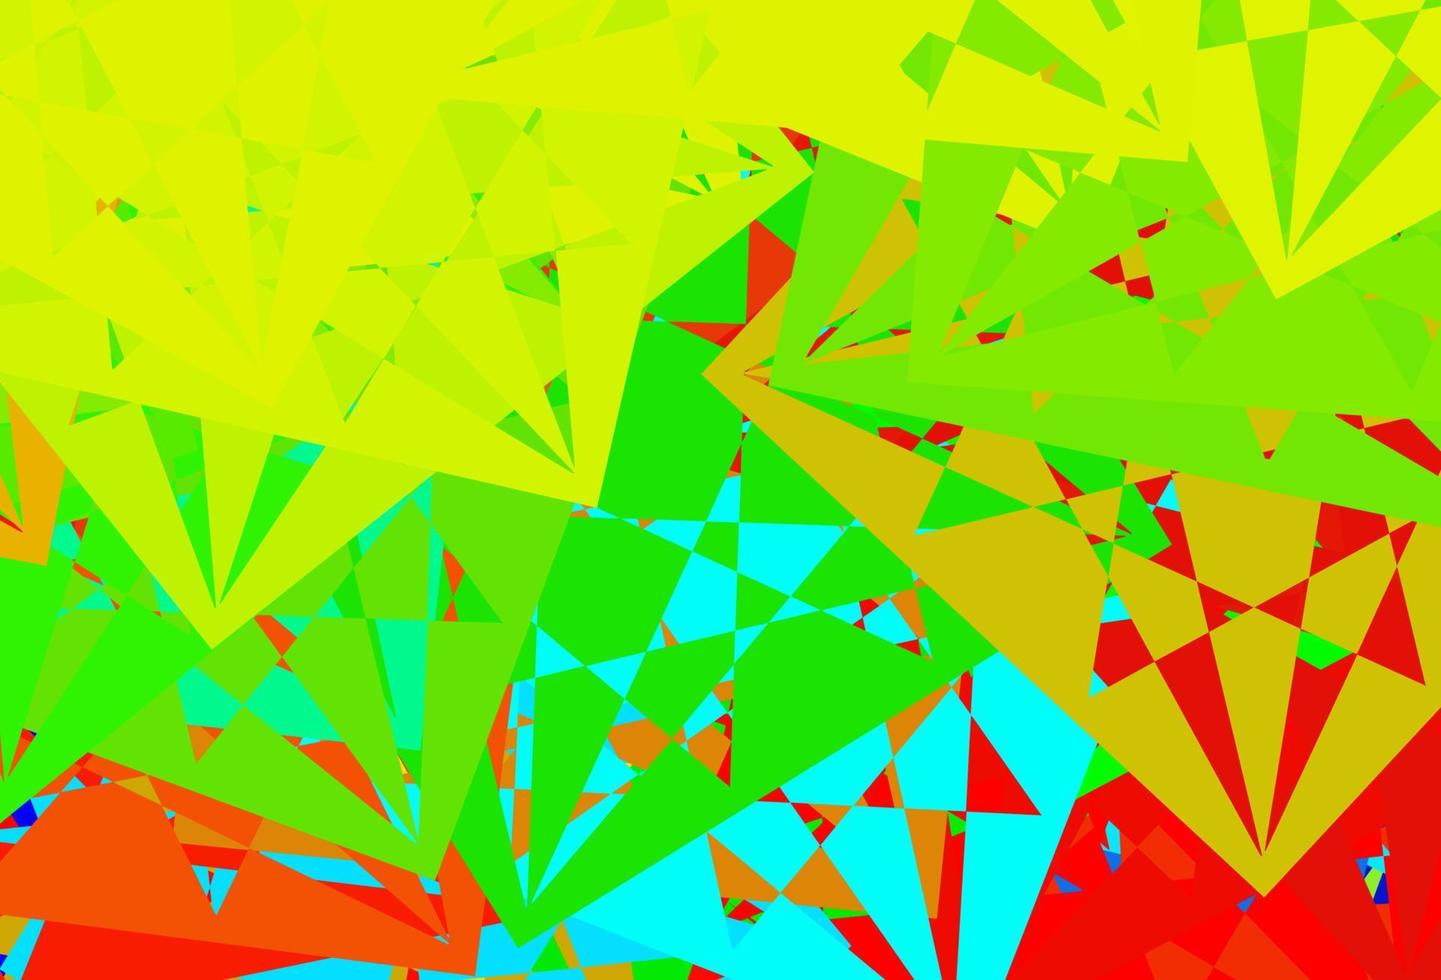 mörk flerfärgad vektorlayout med triangelformer. vektor